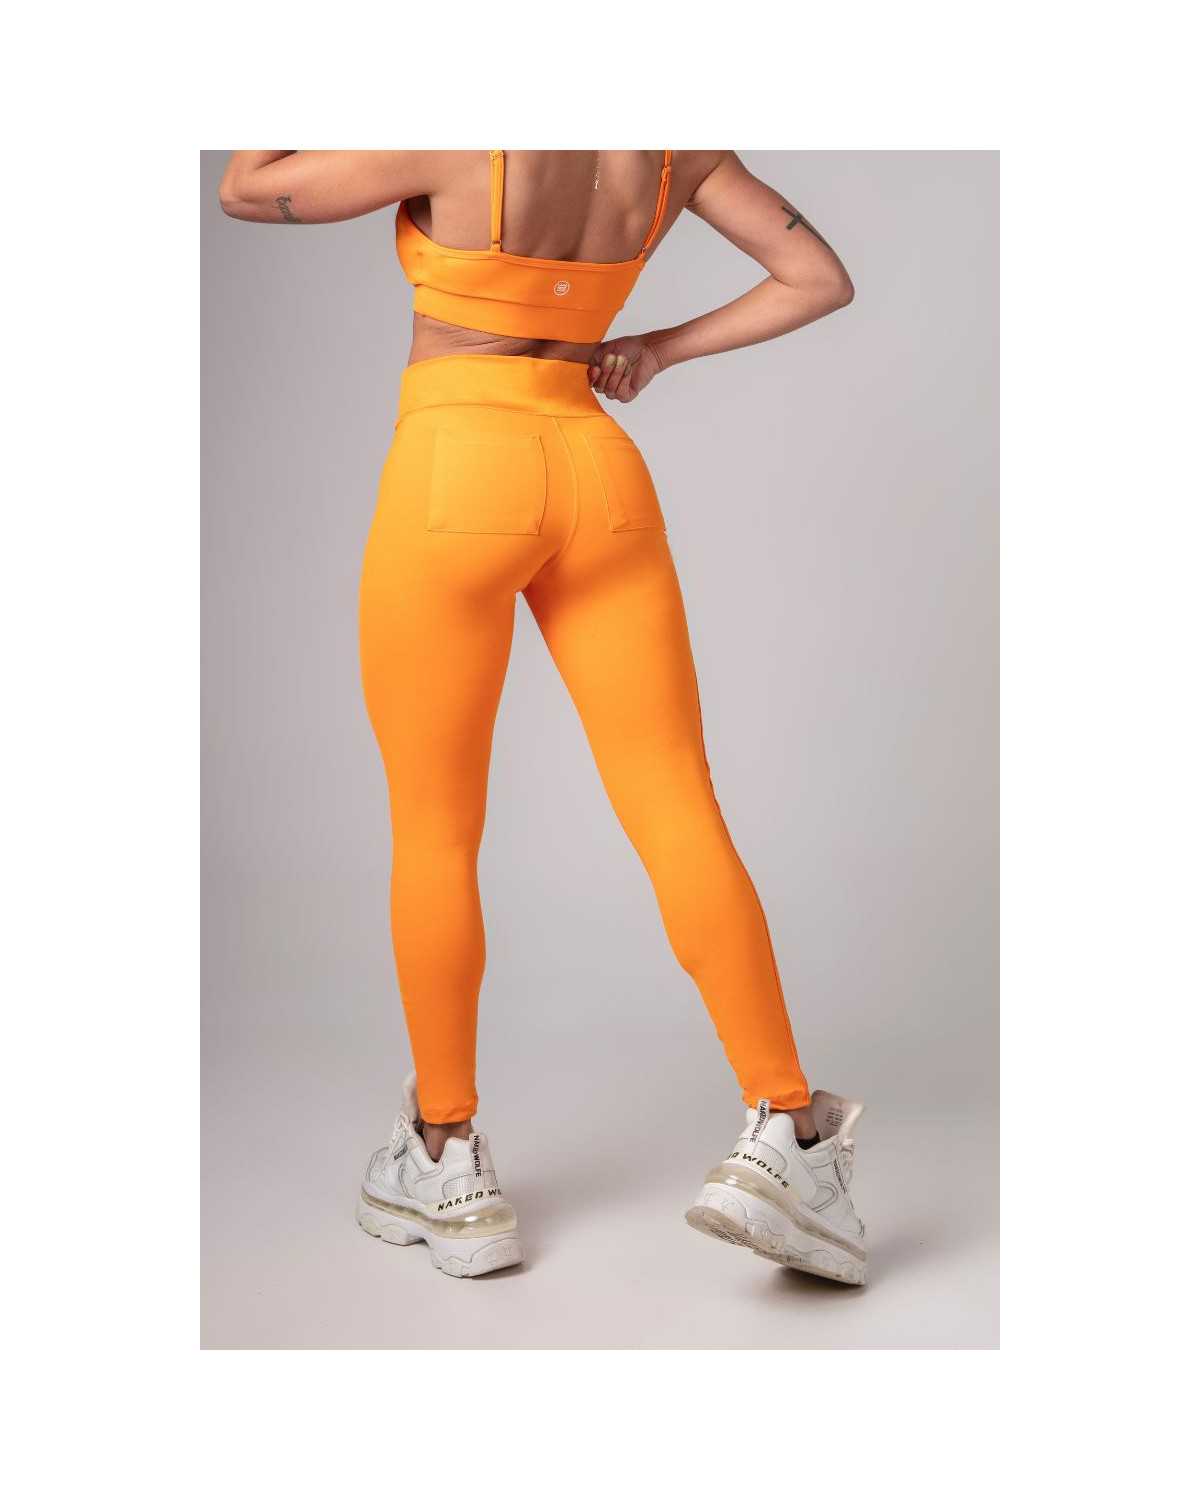 How To Wear Orange Leggings? – solowomen